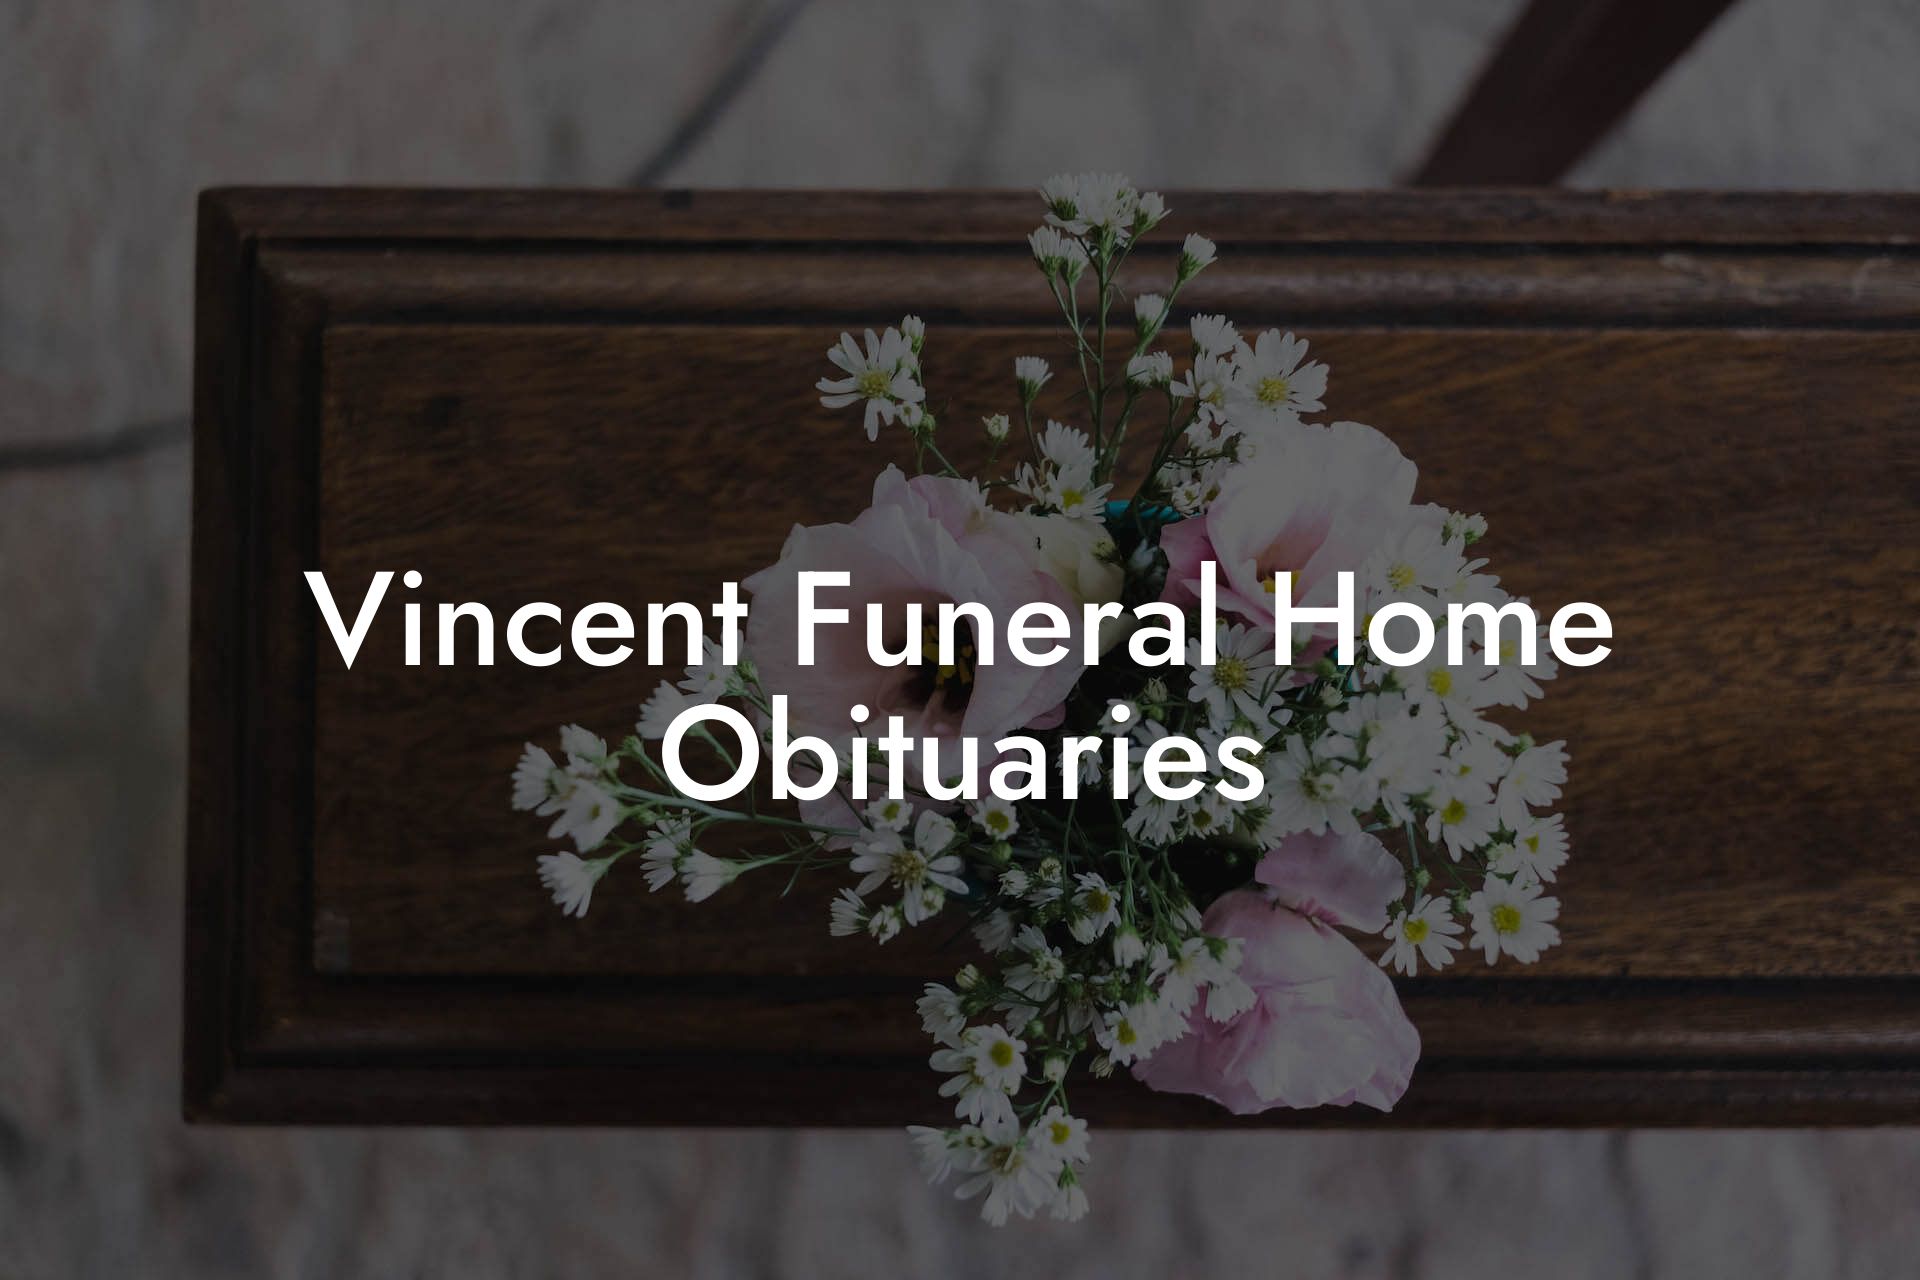 Vincent Funeral Home Obituaries